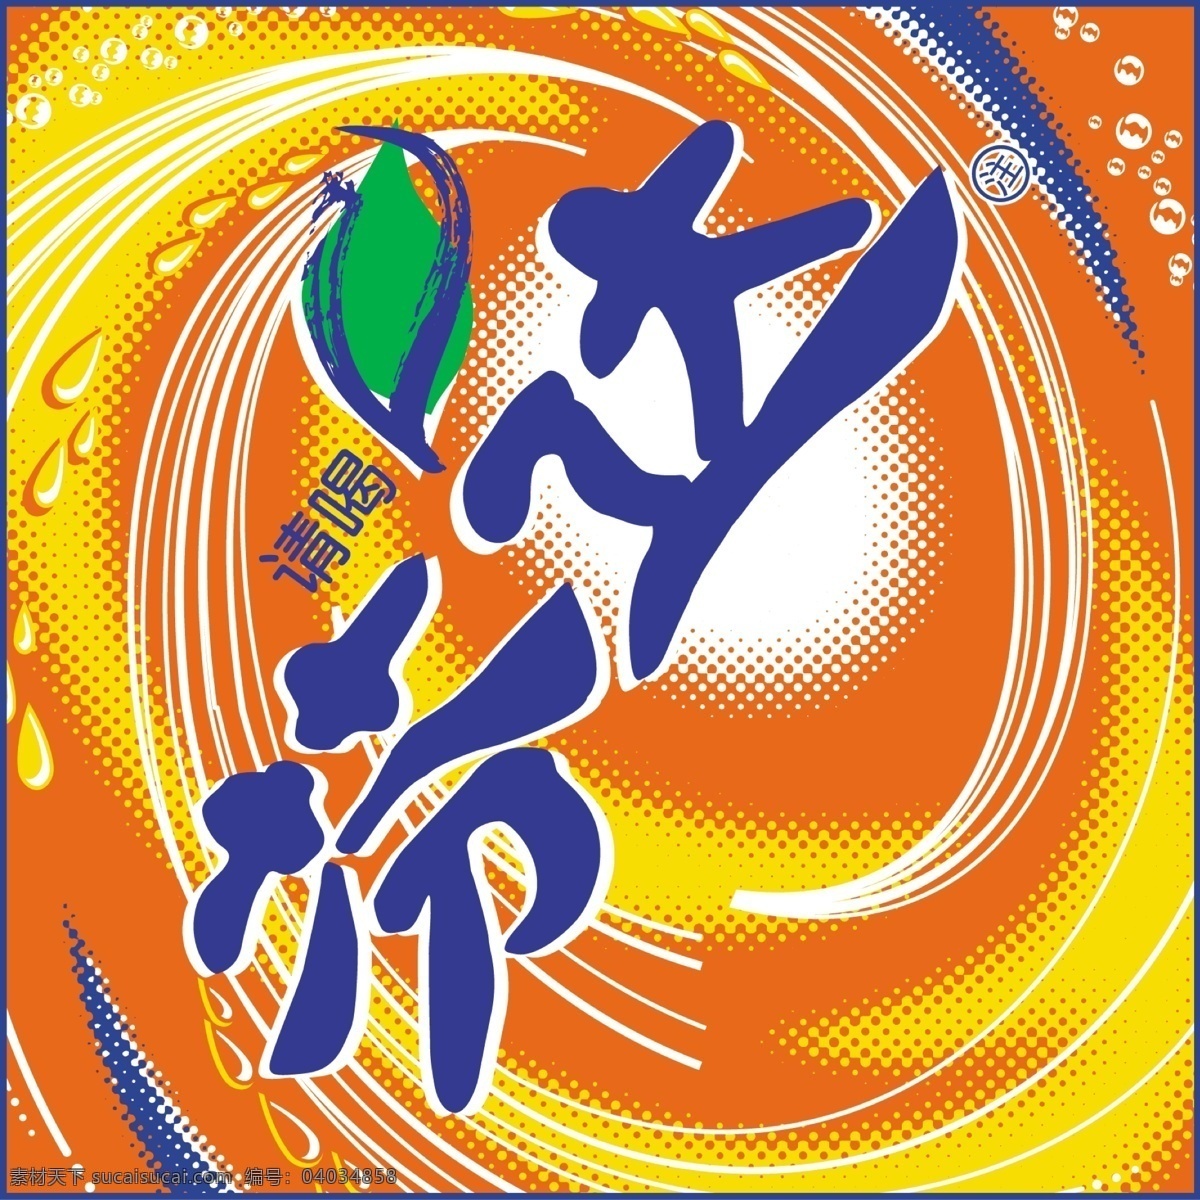 芬达logo logo 标志 食品 汽水 标识 图标 饮料 中文字体标志 企业 标识标志图标 矢量